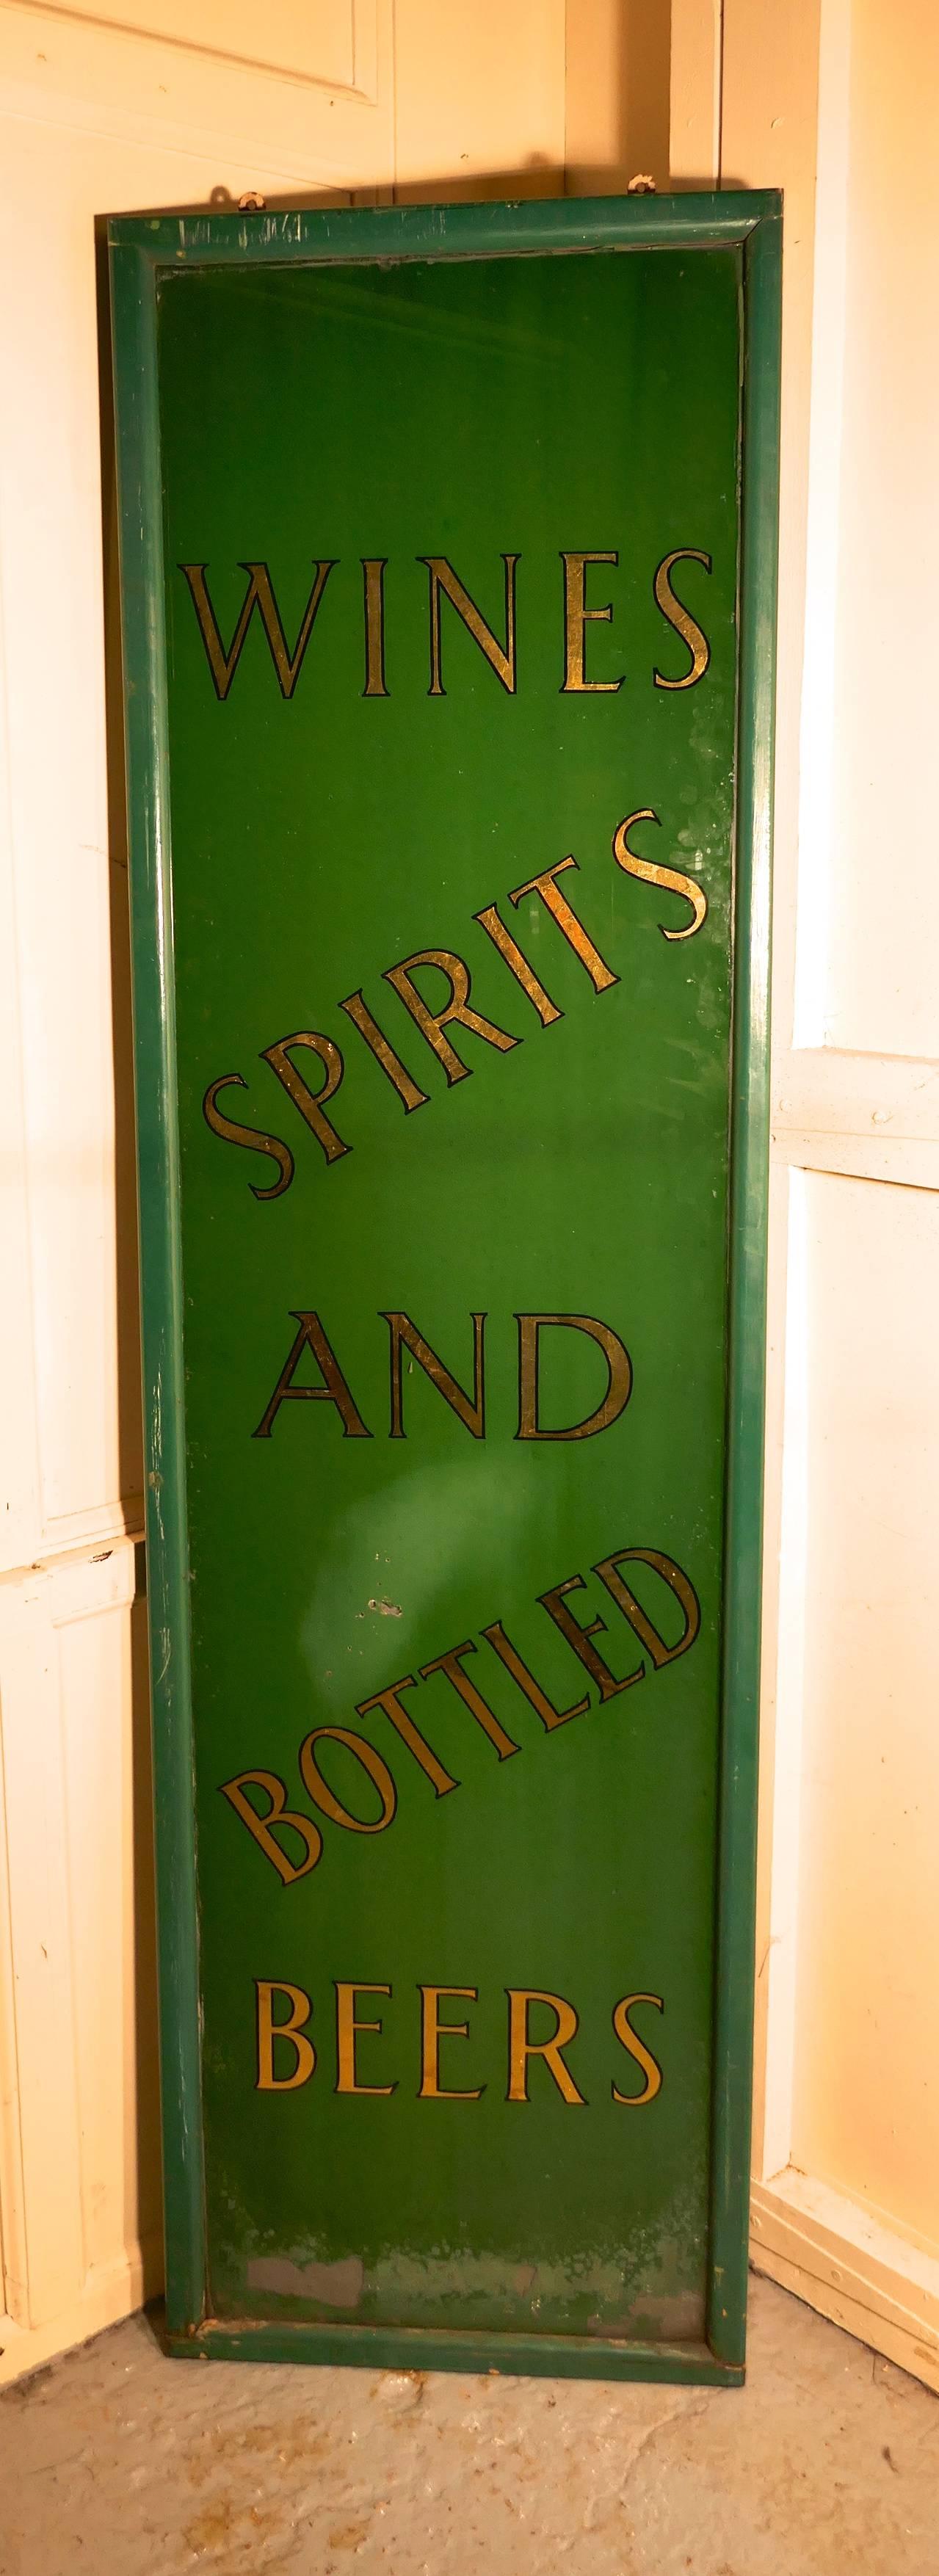 19th Century Pub Mirror Advertising Sign 4